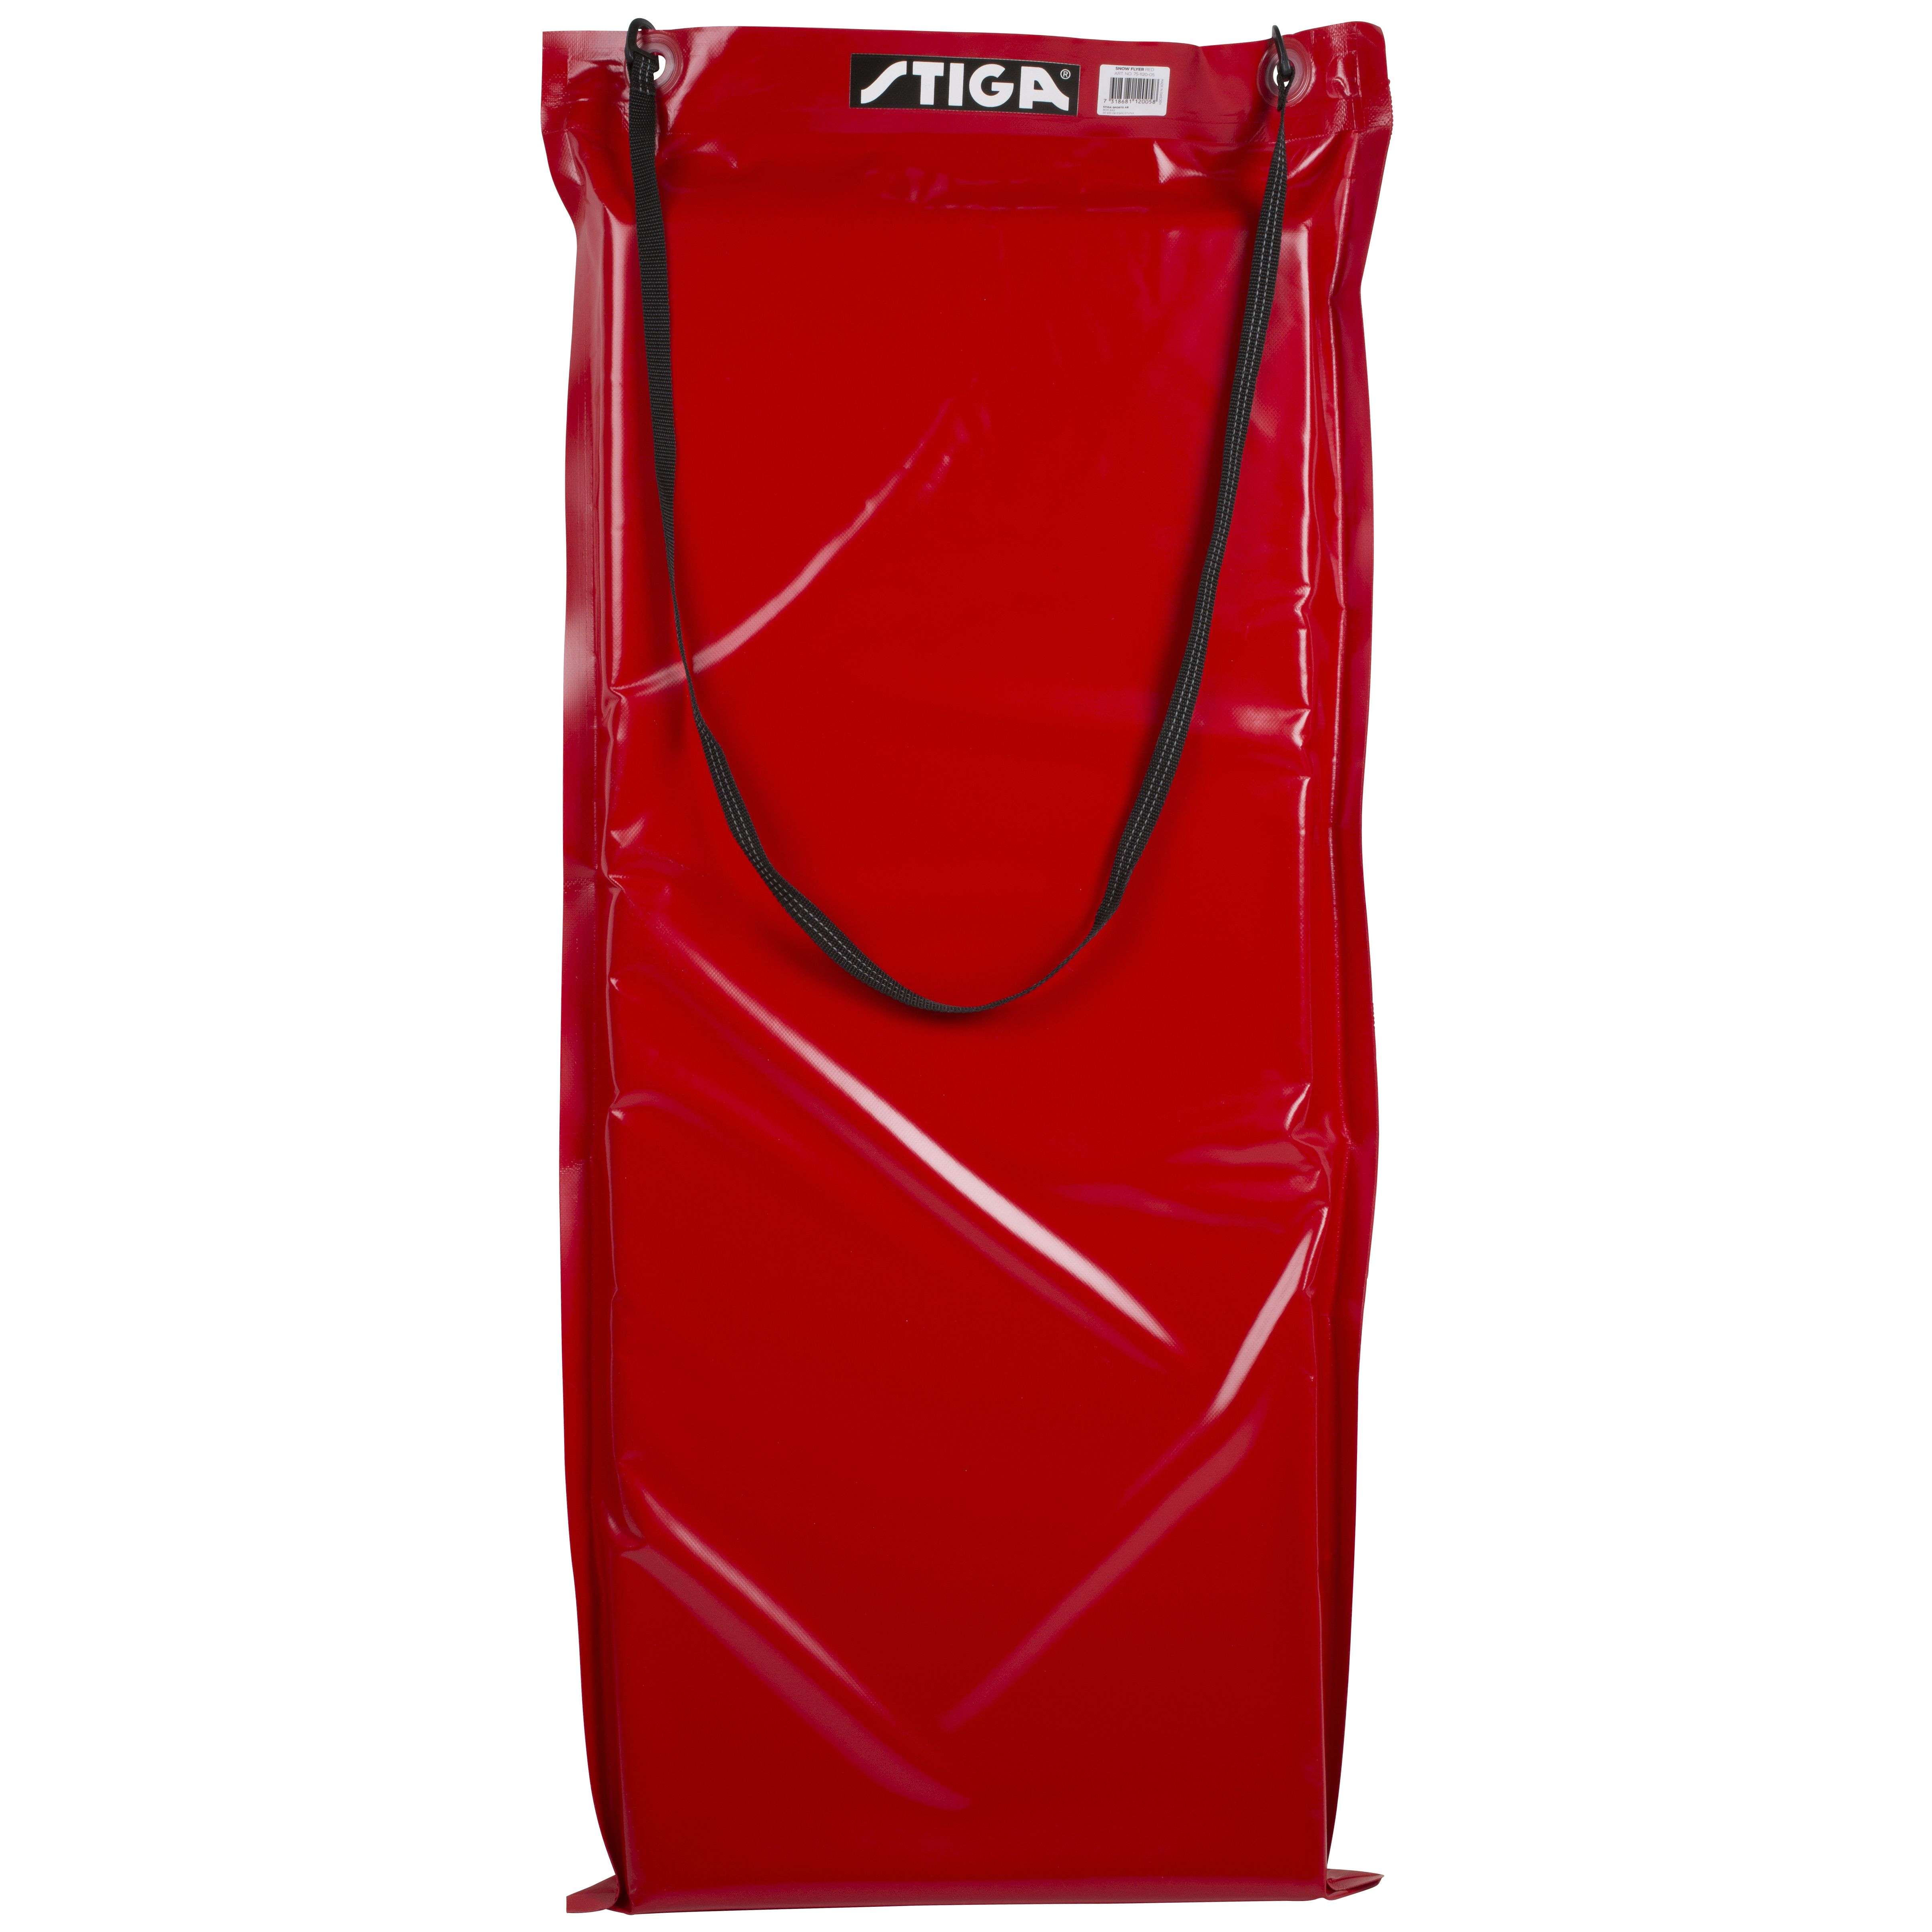 Stiga - Snow Flyer - Red (120 x 50 x 7 cm)